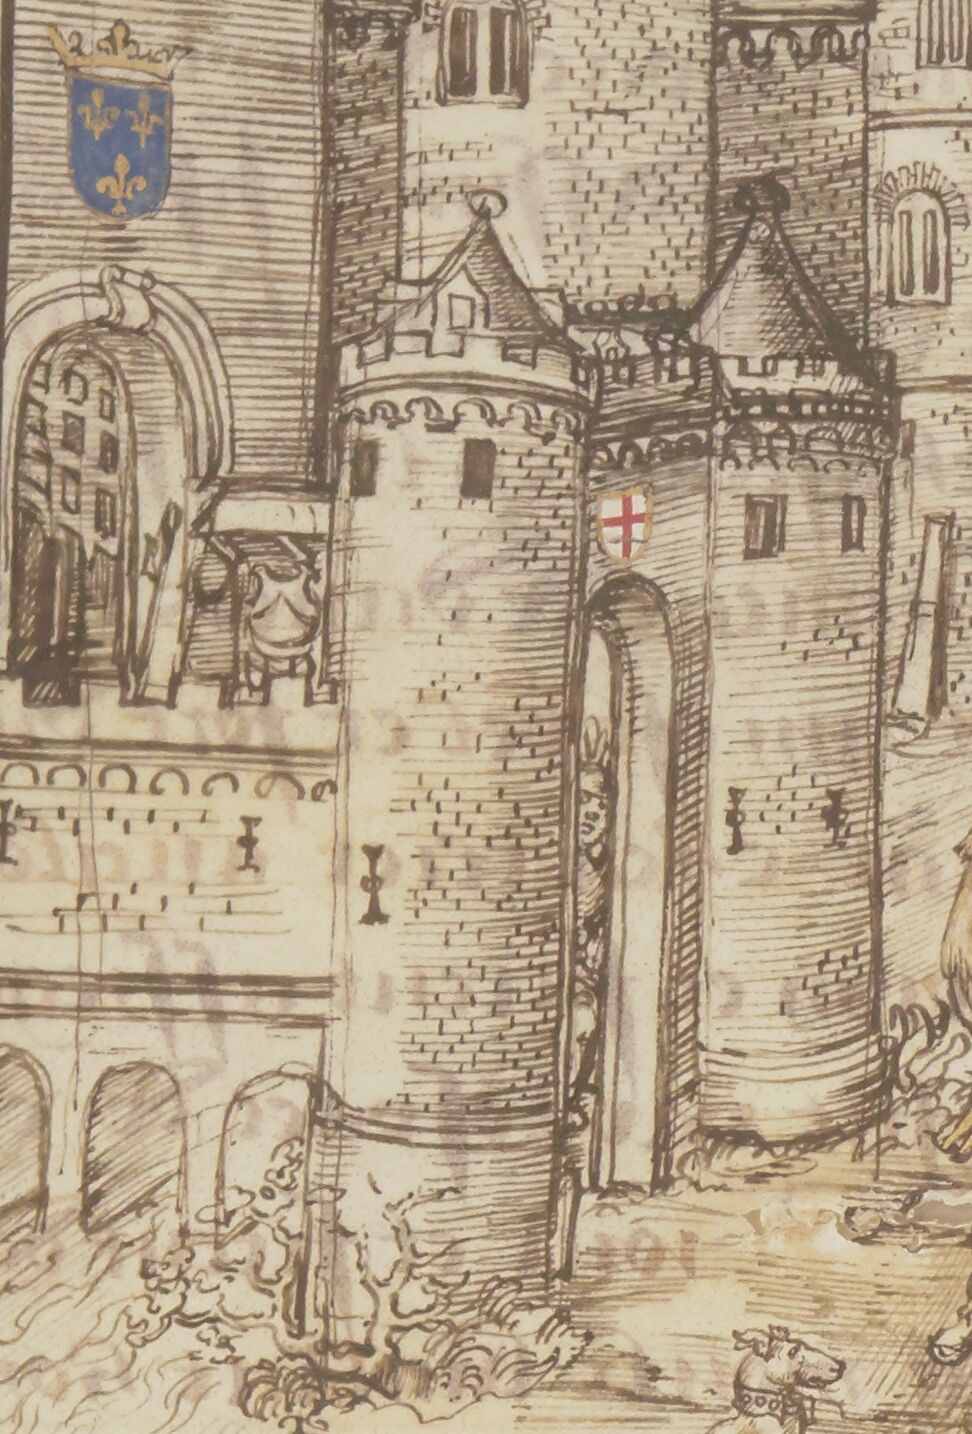 Chronique d'ENGUERRAND DE MONSTRELET, continuée par MATHIEU D'ESCOUCHY. III Années 1444-1467. 